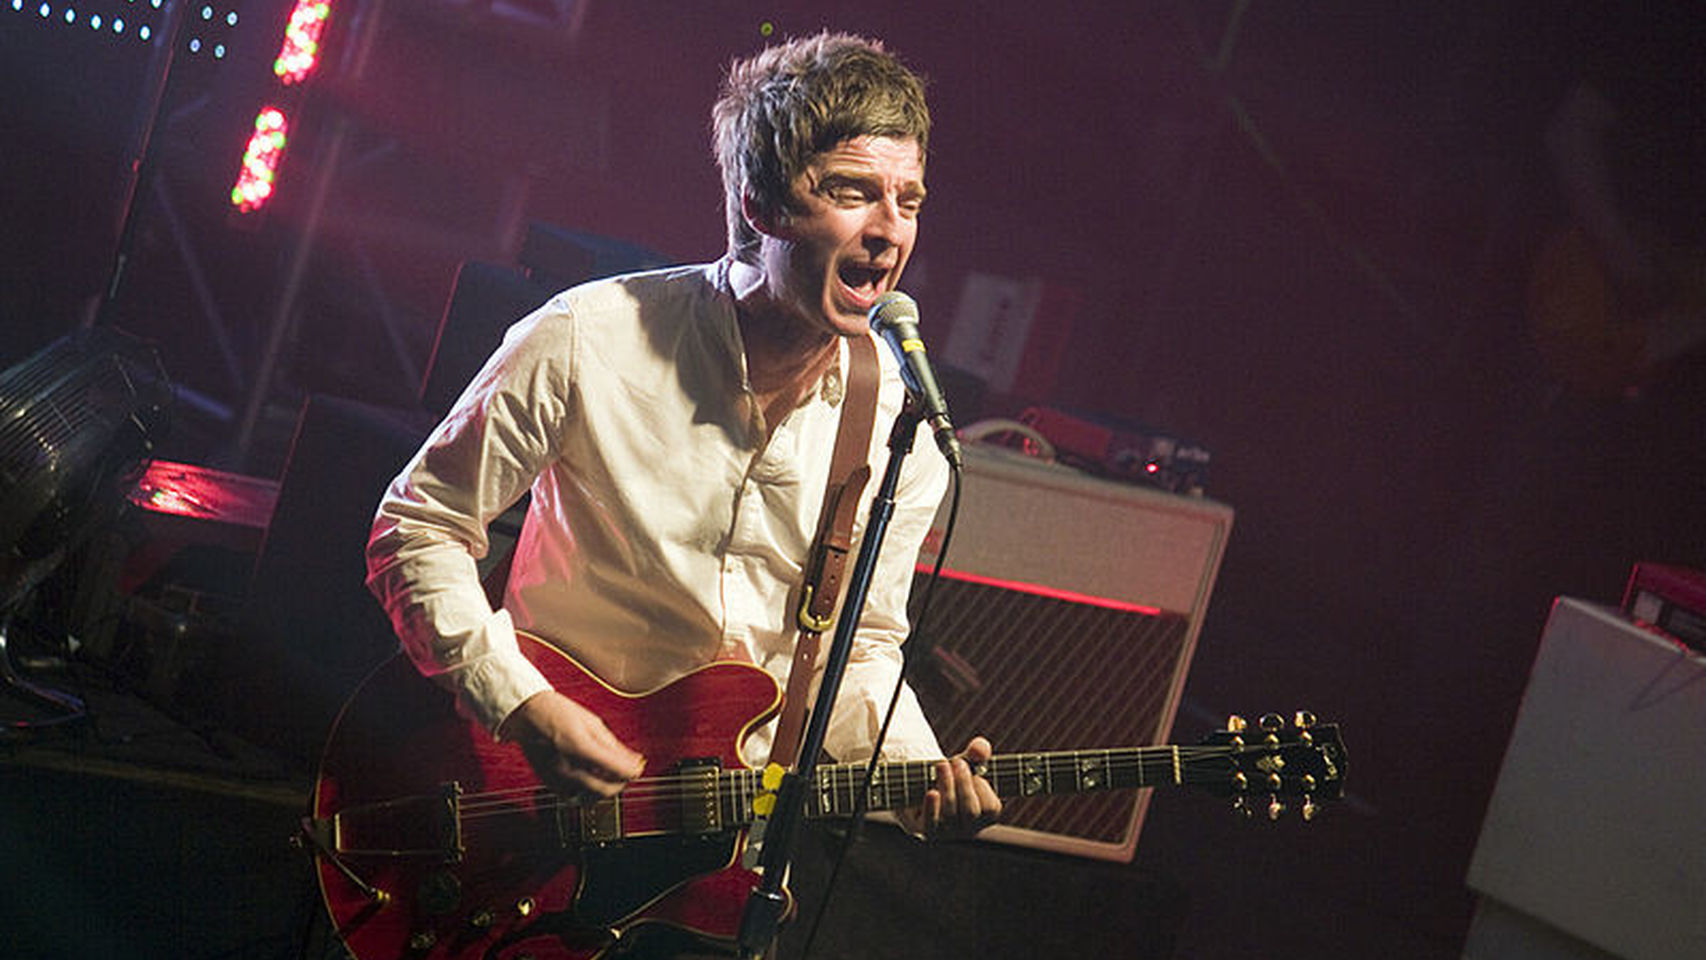 Noel Gallagher nos da los primeros indicios de su viaje a la luna con “Holy Mountain”. cusica plus.